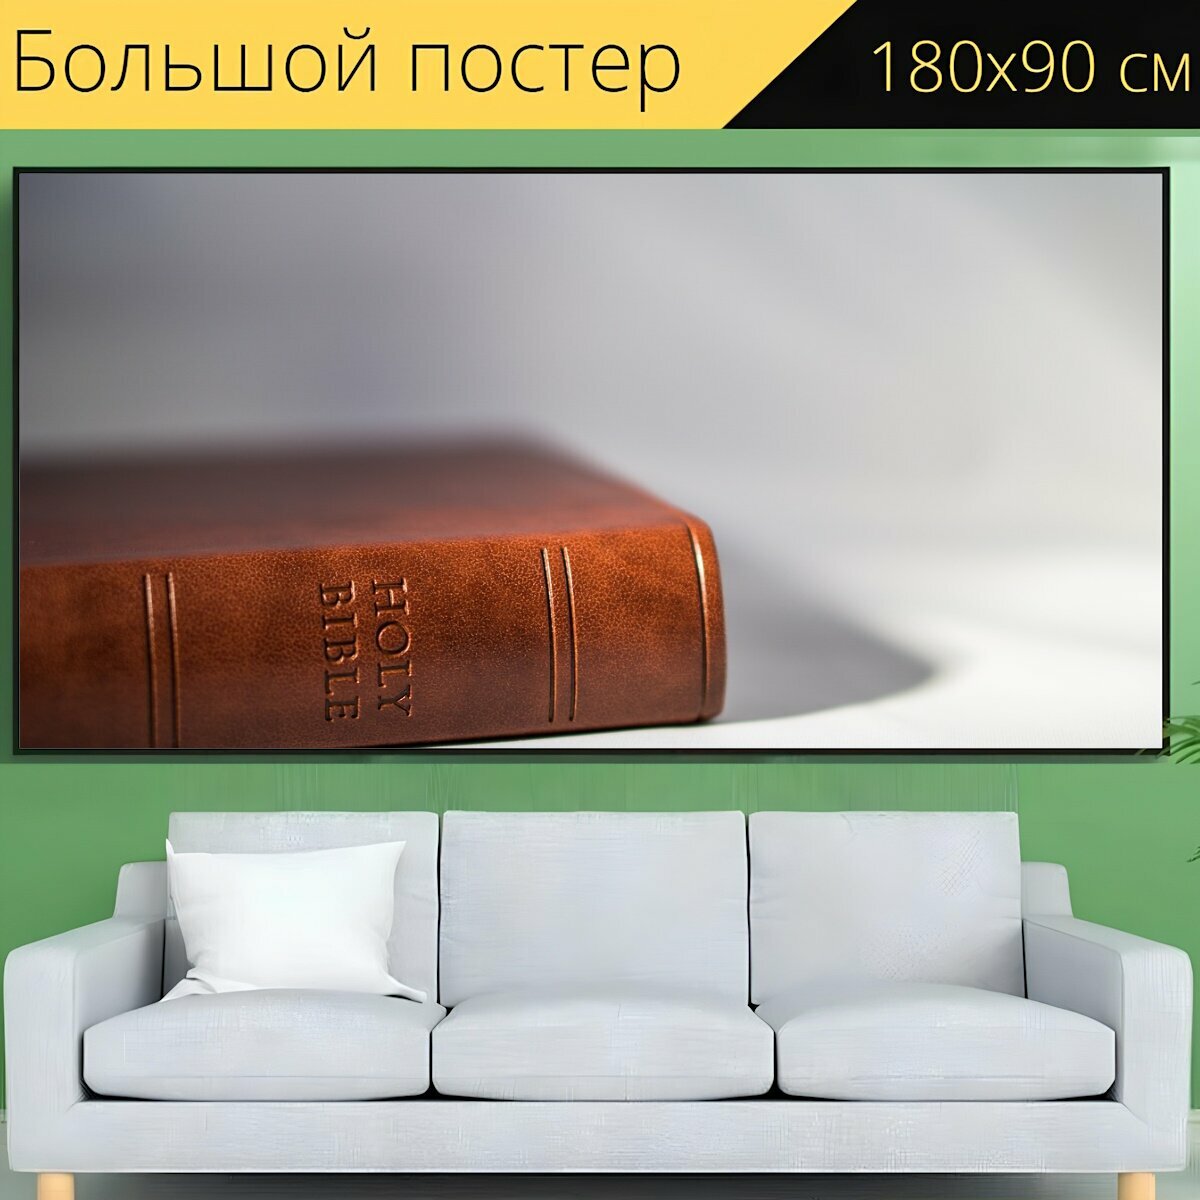 Большой постер "Библия, писание, книга" 180 x 90 см. для интерьера